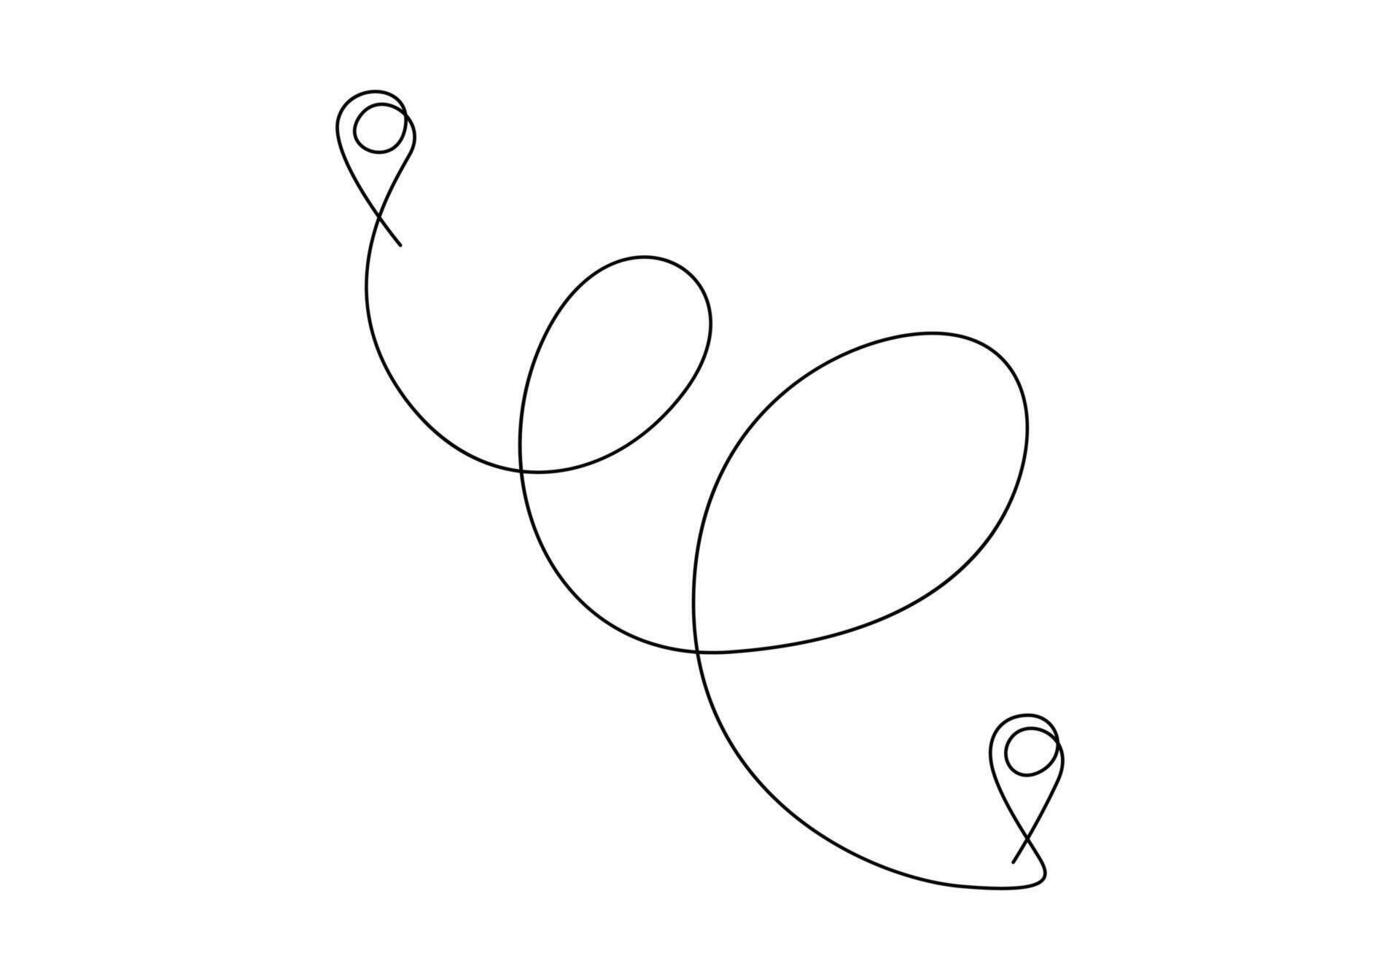 1 contínuo linha desenhando do caminho e localização ponteiros simples alfinetes em caminho entre dois pontos dentro linear estilo vetor ilustração